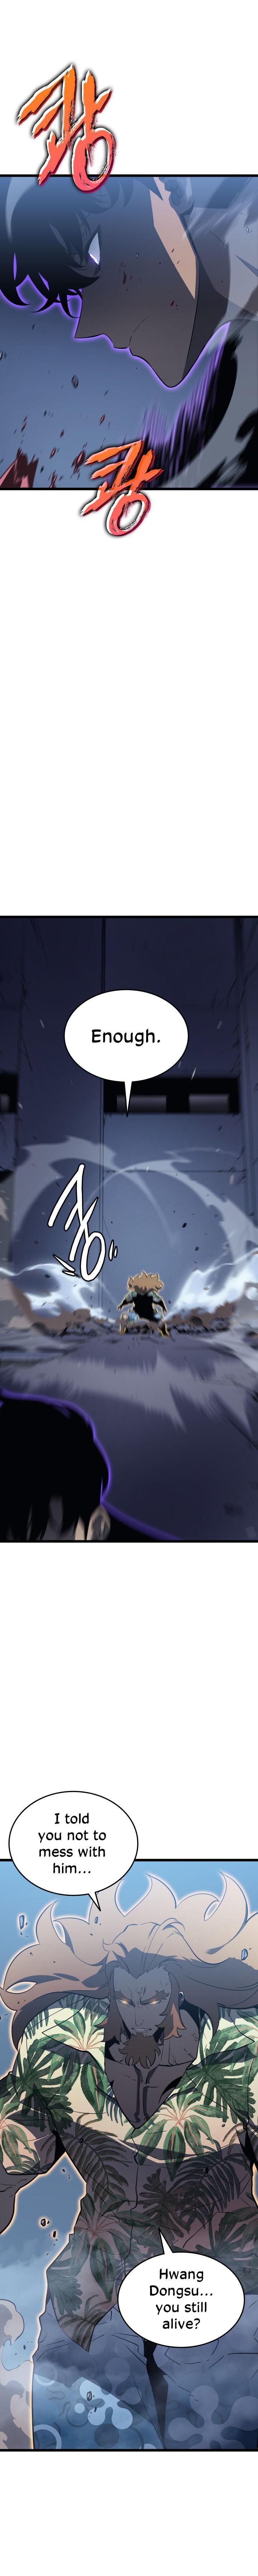 Solo Leveling Manga Manga Chapter - 145 - image 10